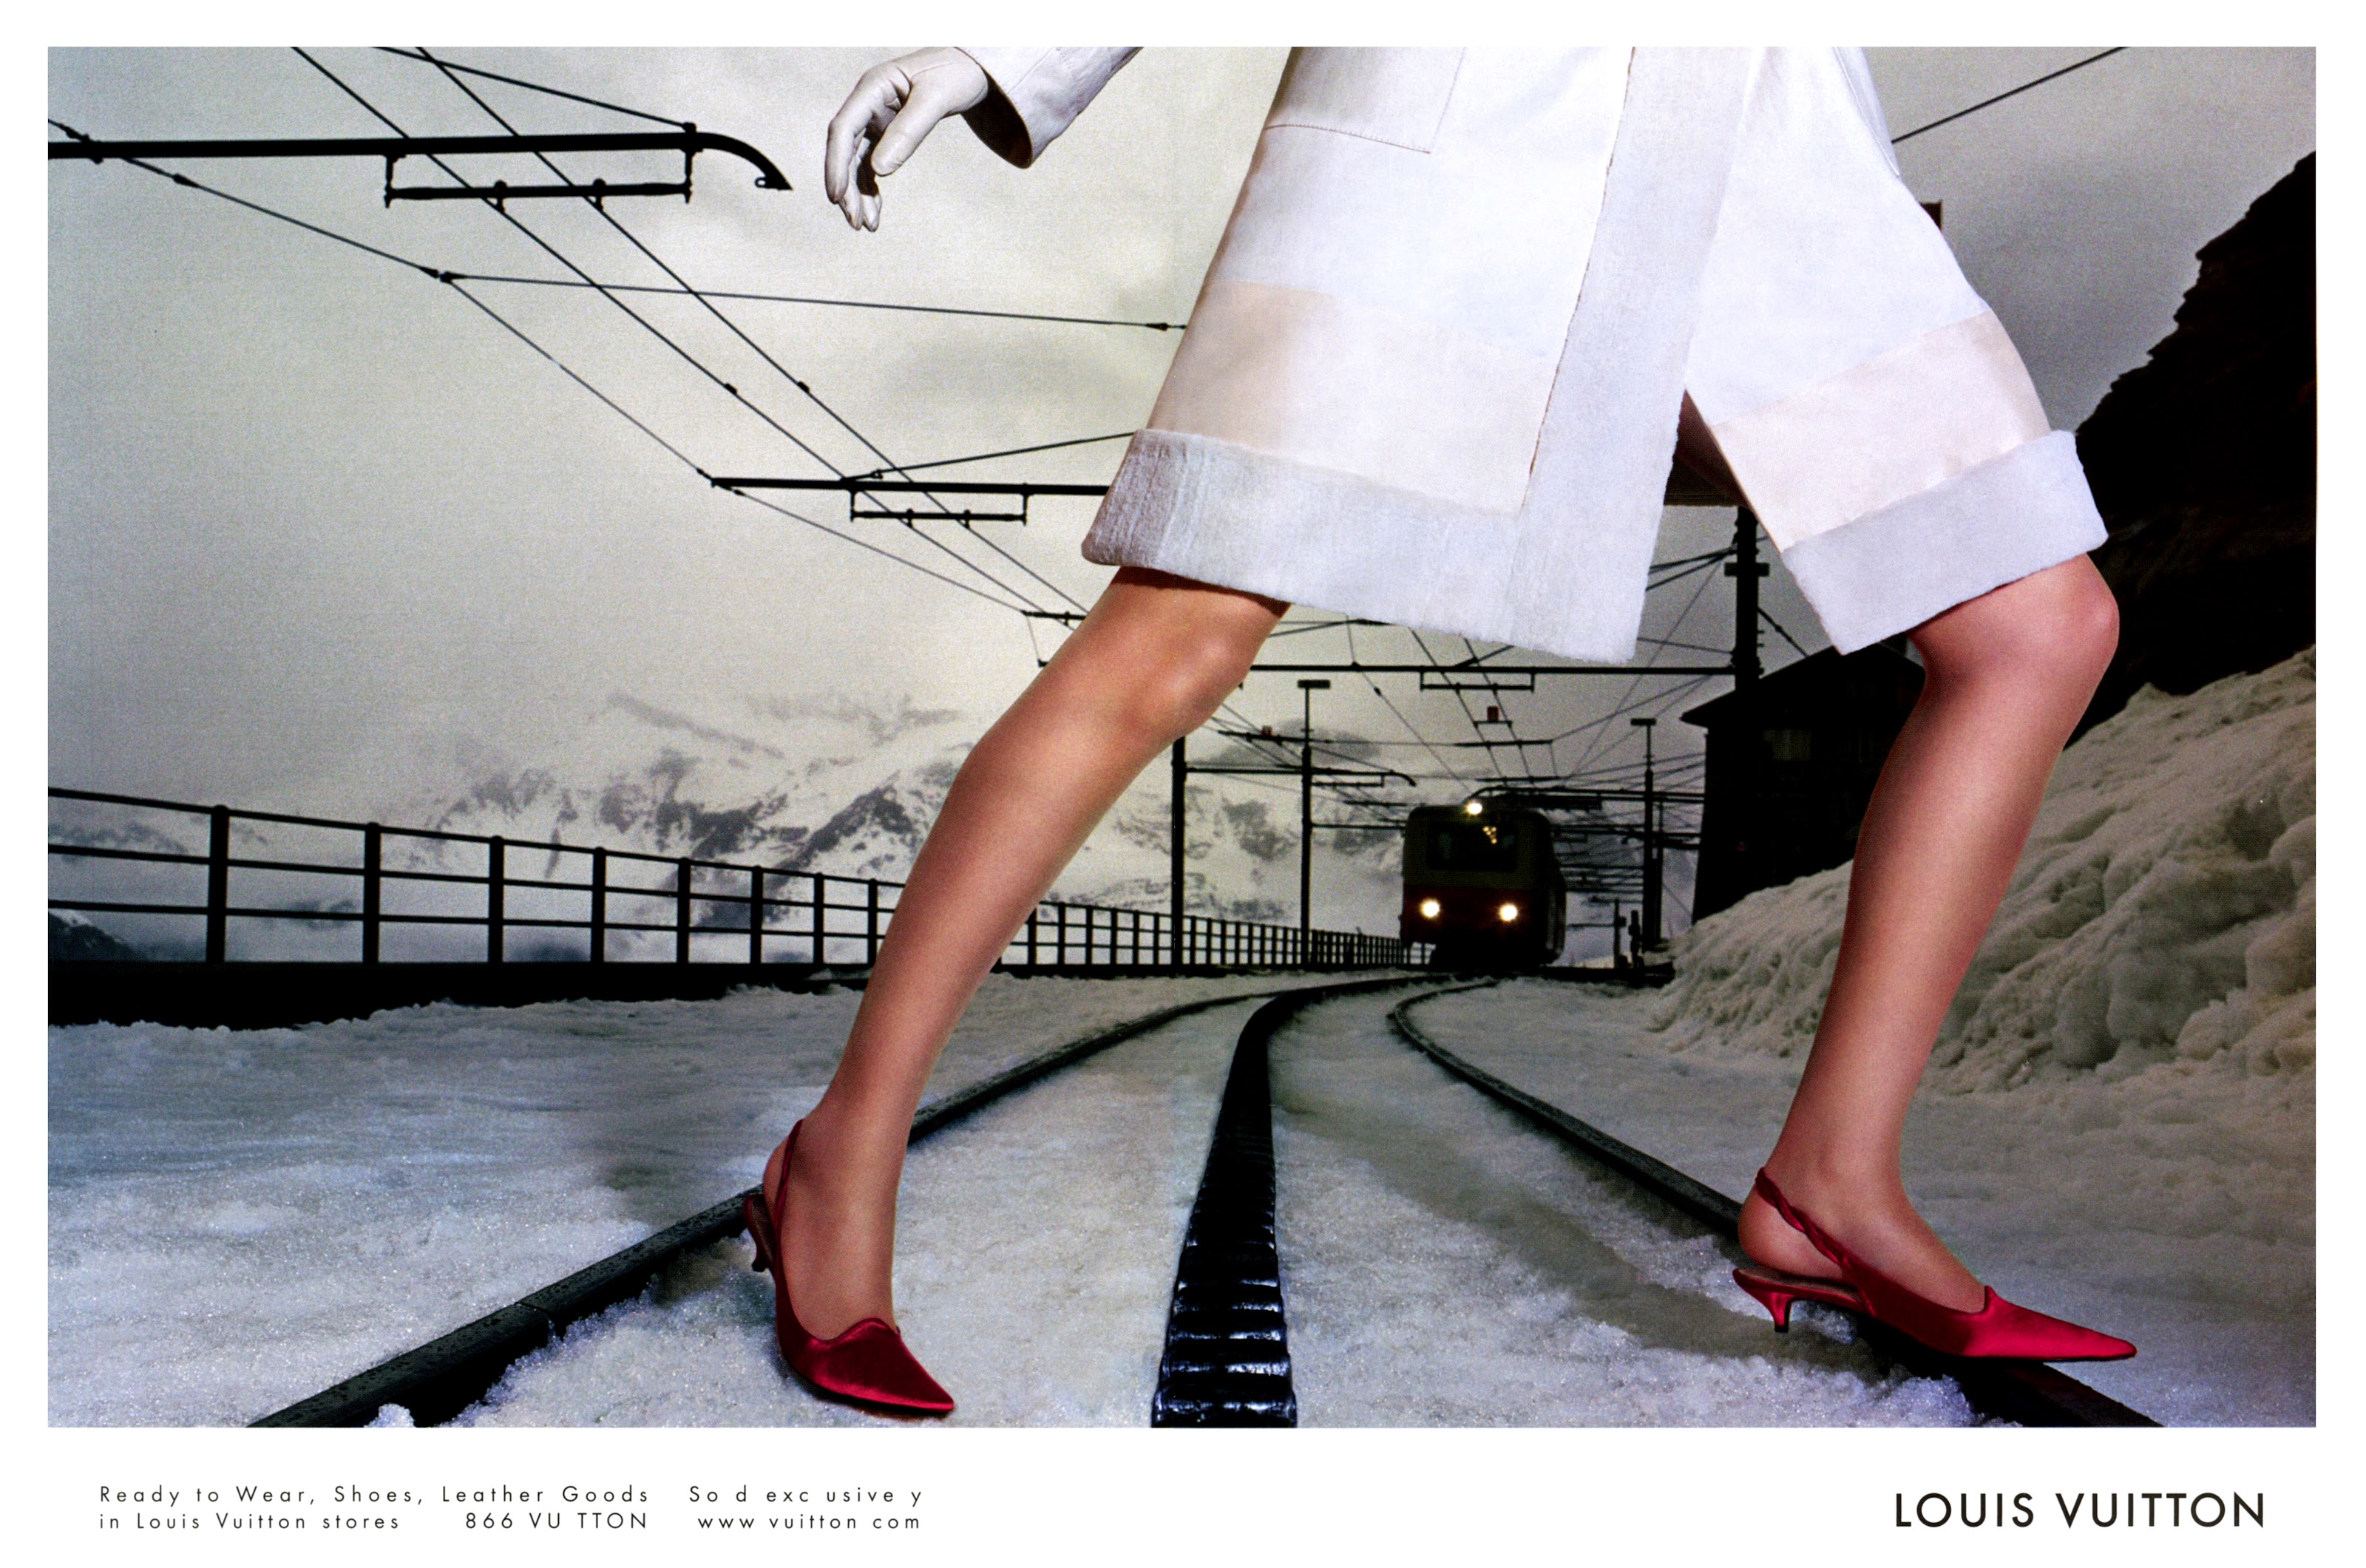 Eva Herzigova For Louis Vuitton 2002 Leather Bags PRINT AD Set 4 pg.